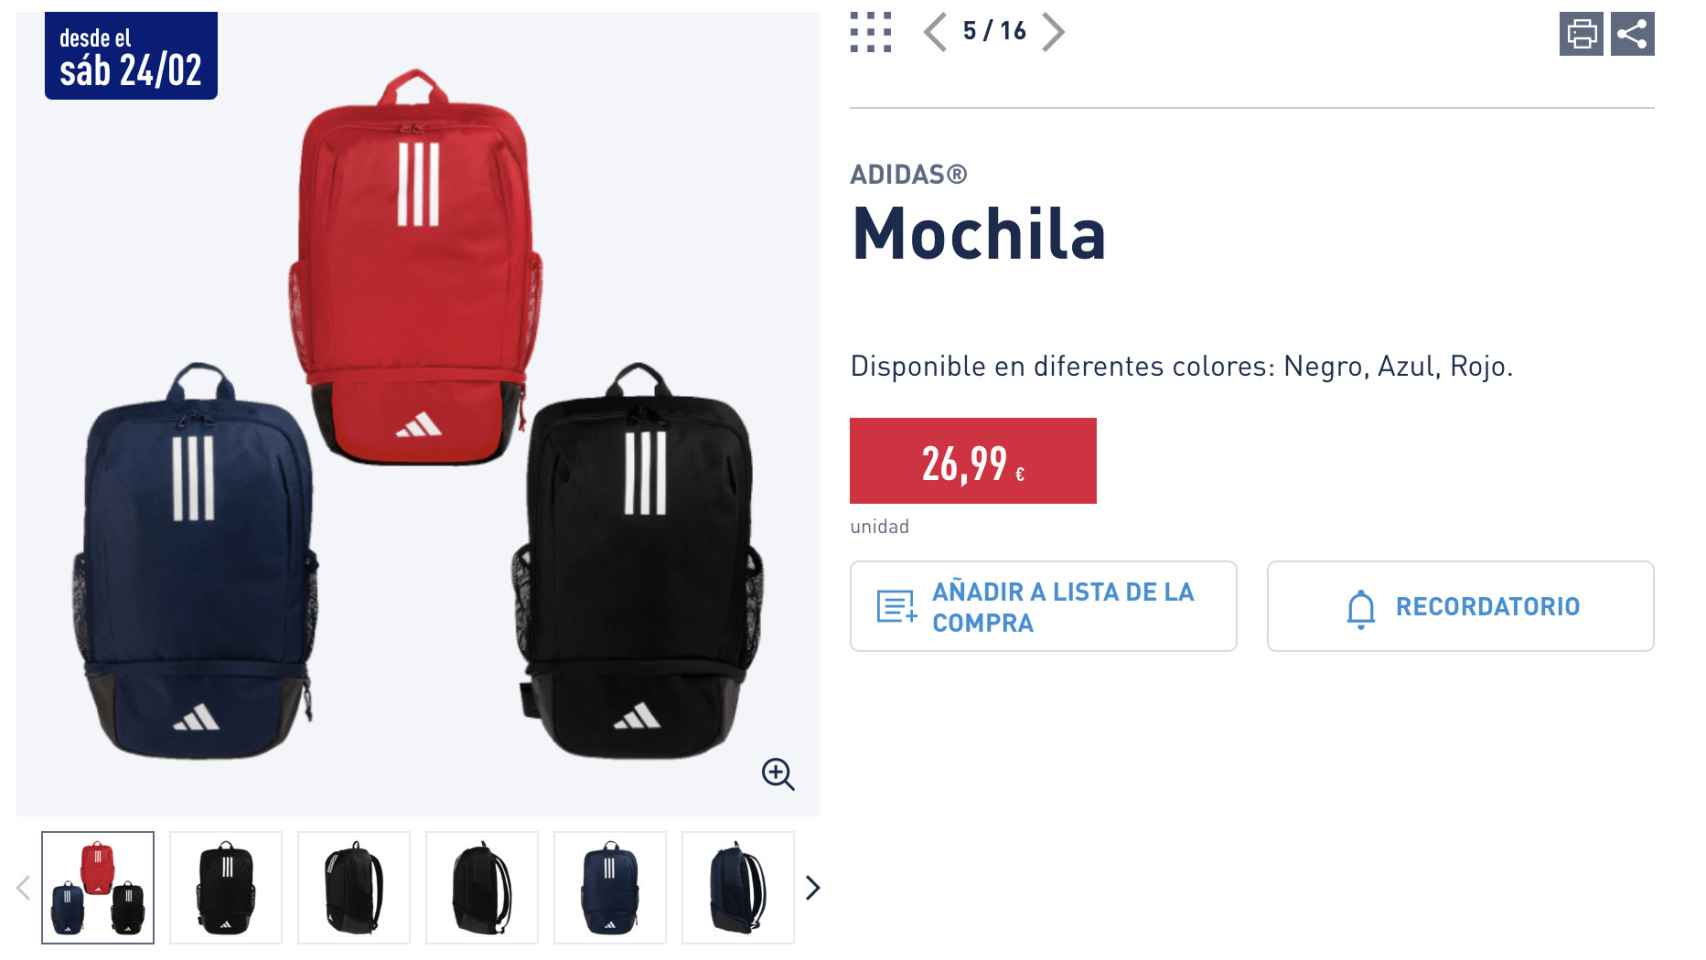 Mochila Adidas.